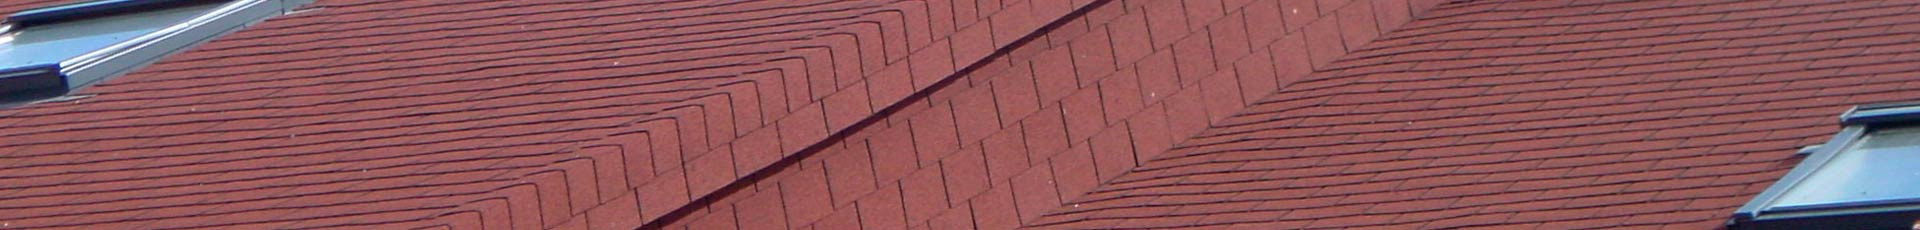 Reparación de Tejados tejados de tegola